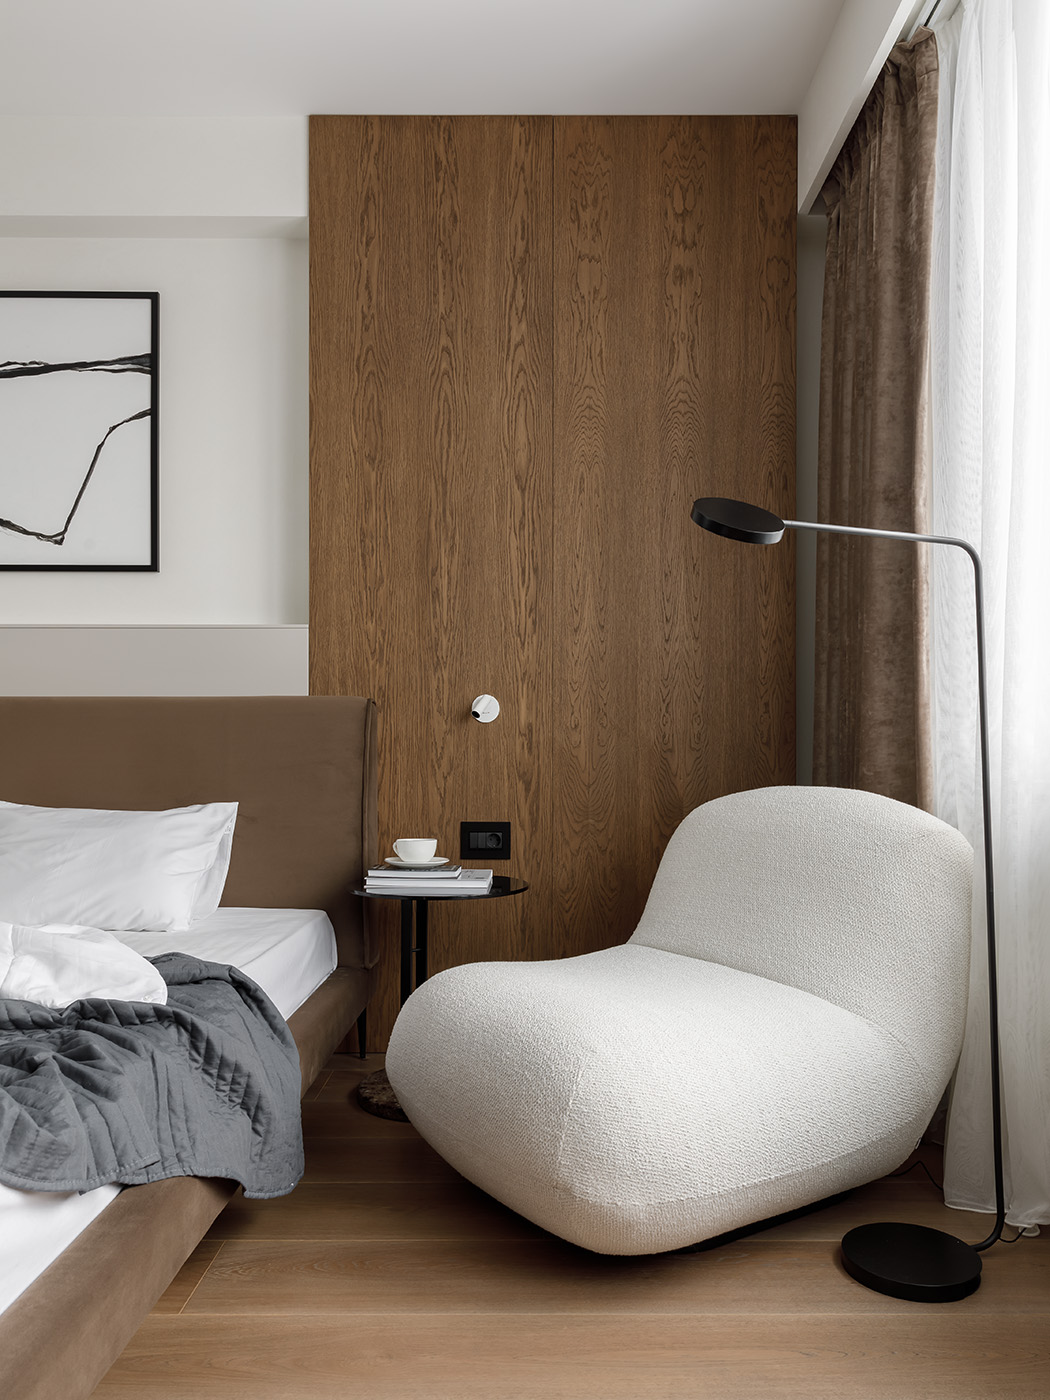 Мебель в мастер спальне лаконична как и весь интерьер - проекты Setus Design